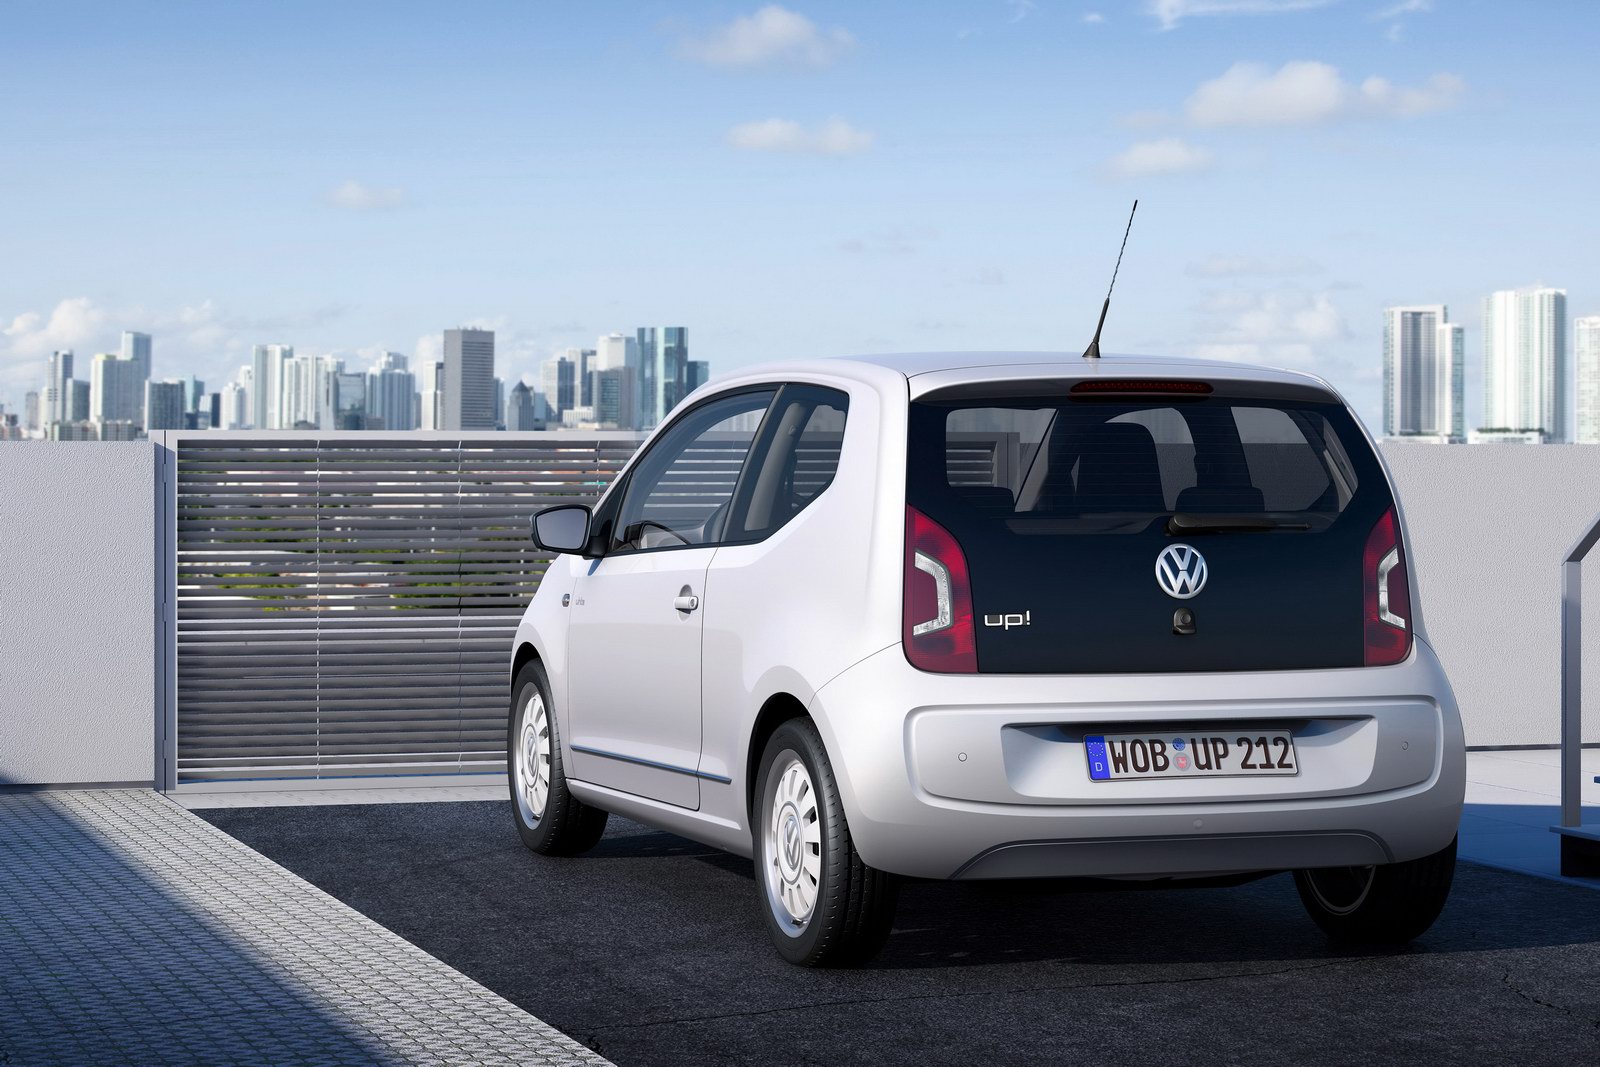 VW Unveils Production Version of Up! City Car